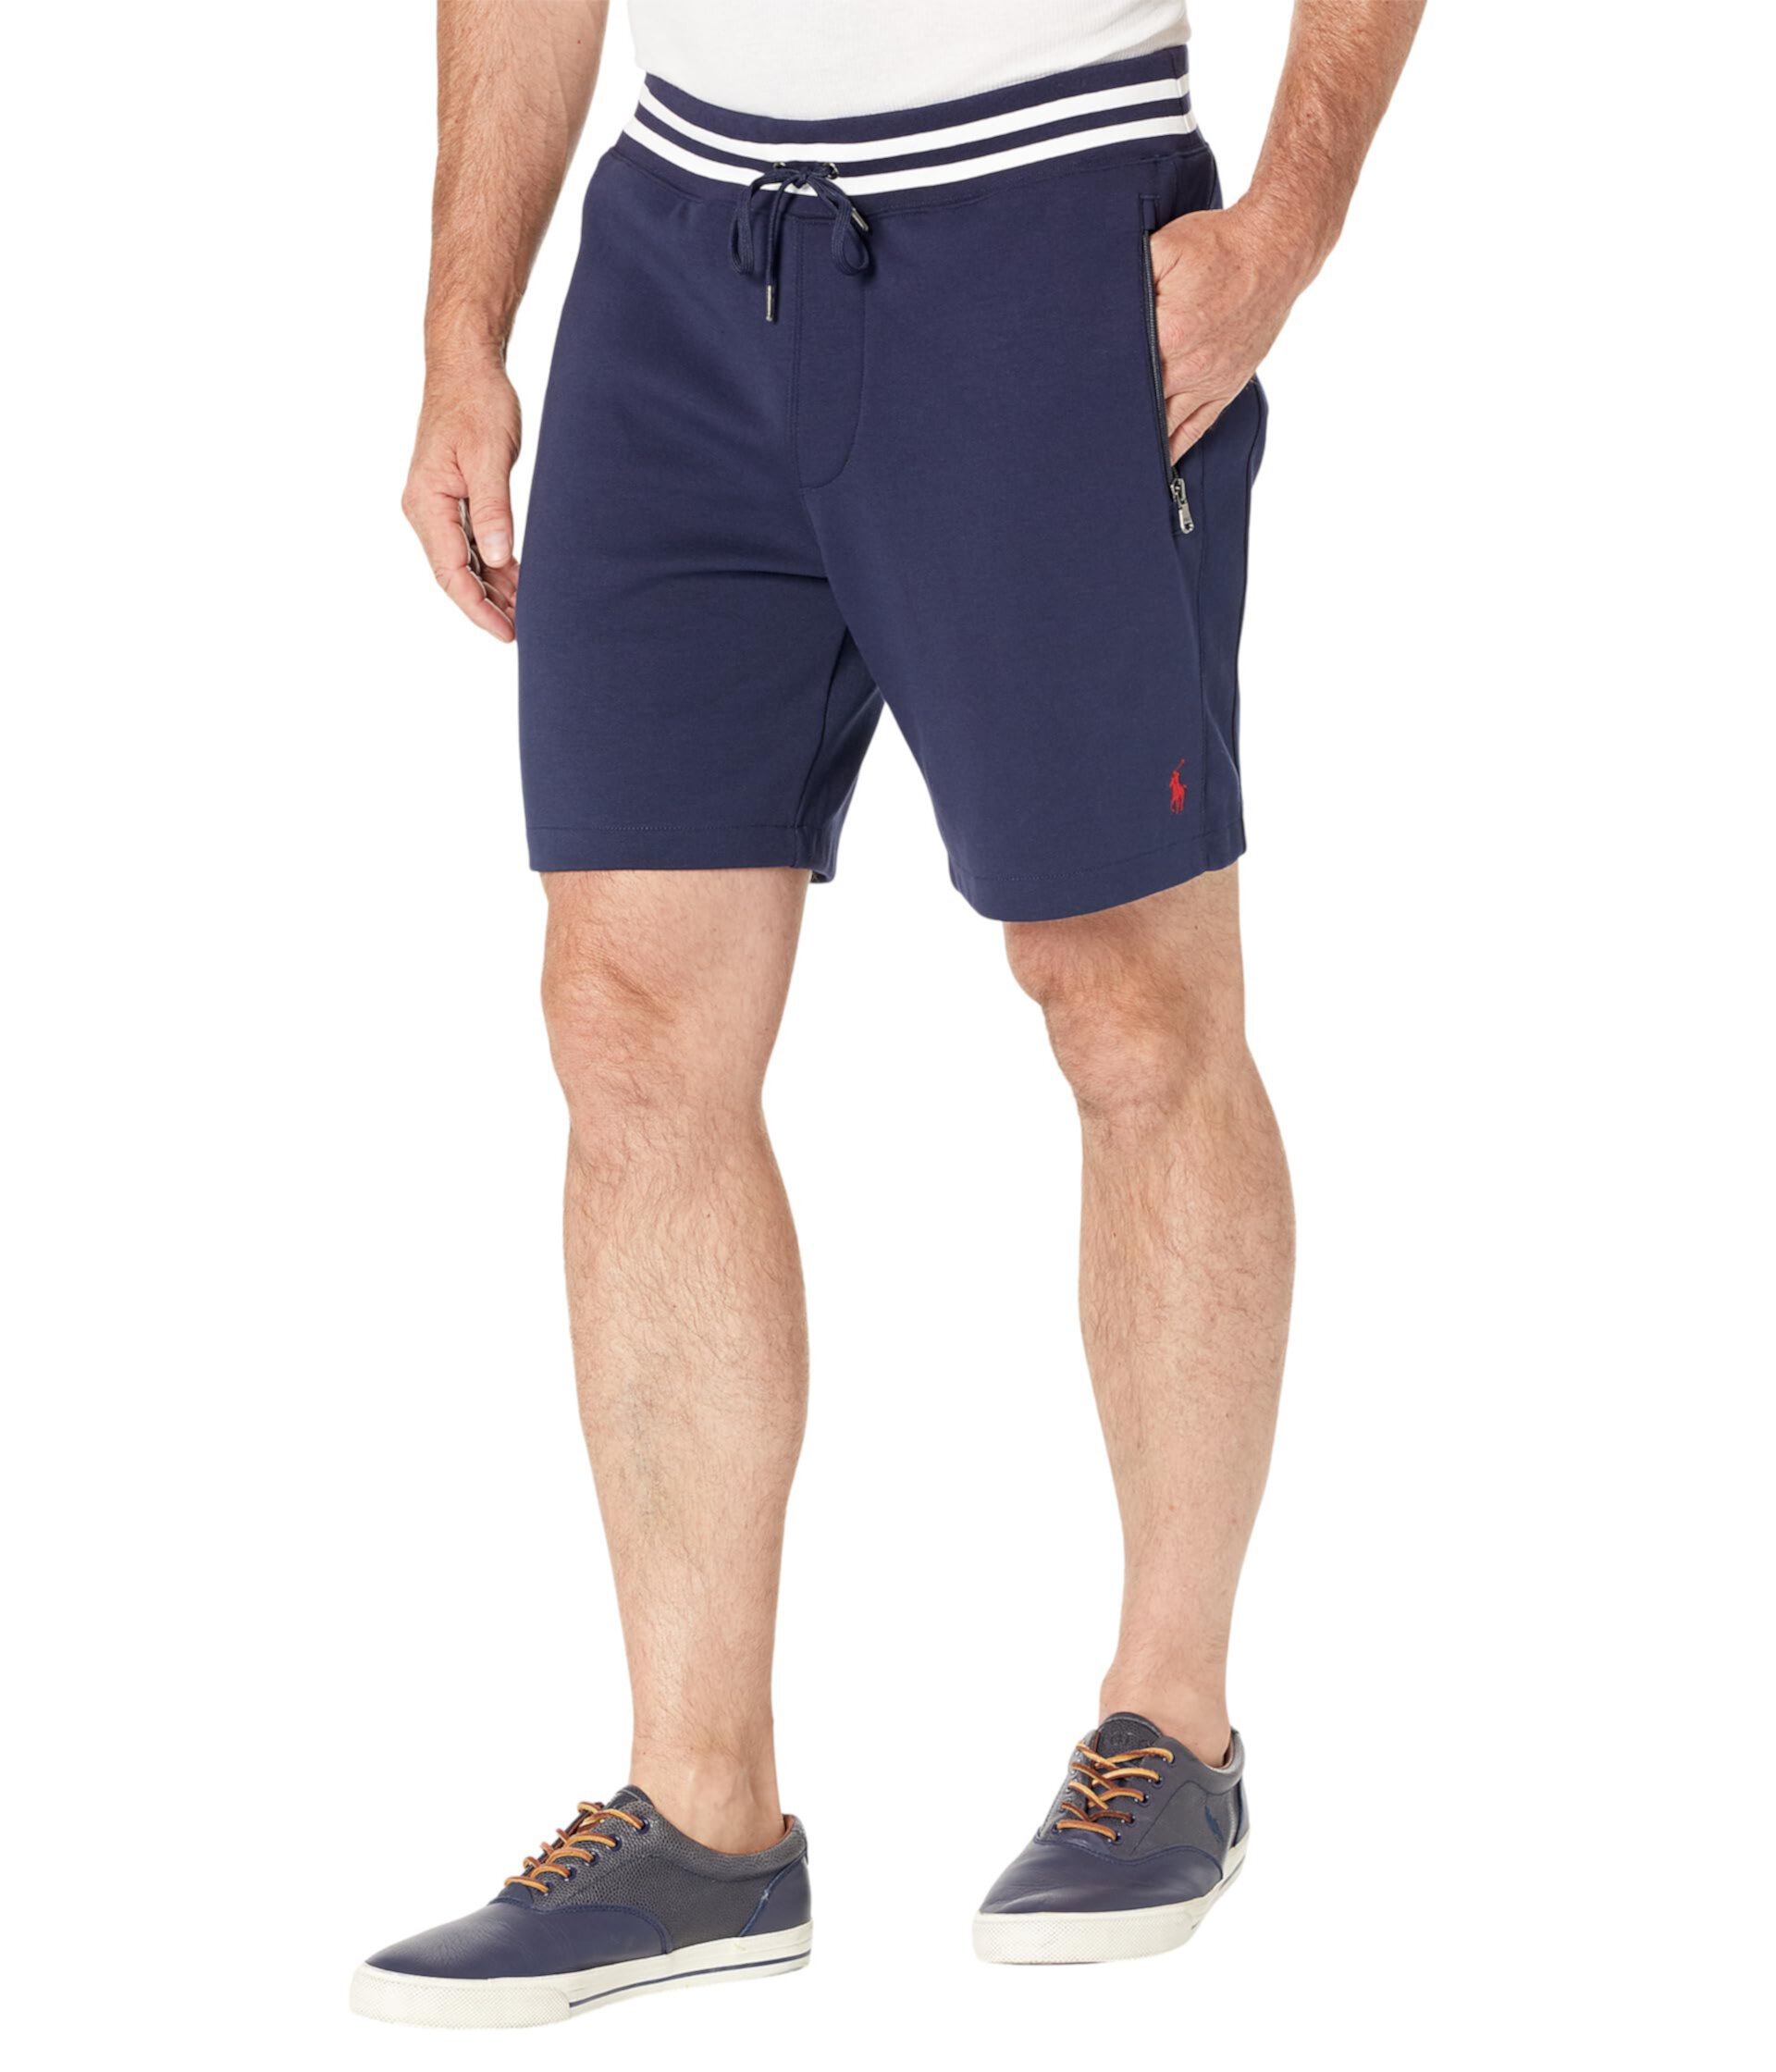 Казуальные шорты Polo Ralph Lauren для мужчин, длиной 19.05 см (7.5 дюйма) Polo Ralph Lauren